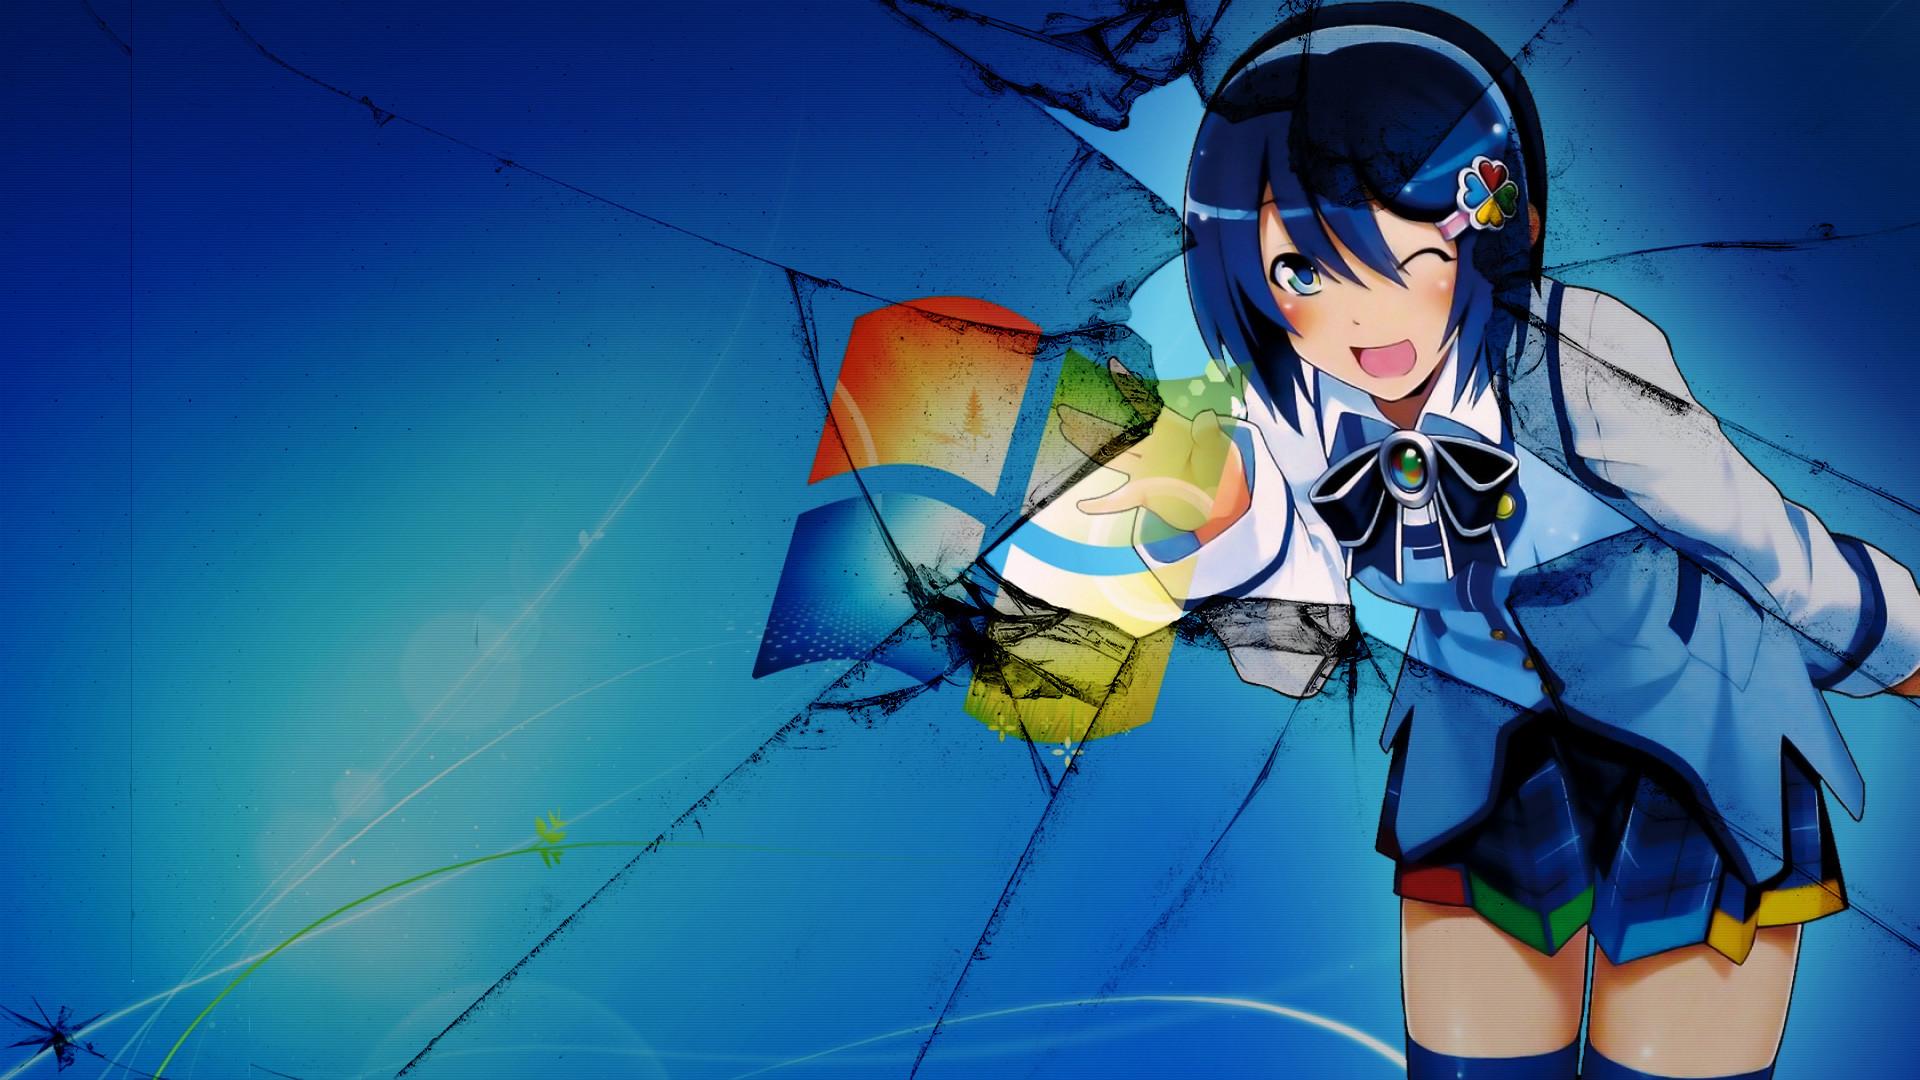 Anime Girl Wallpaper Windows 10